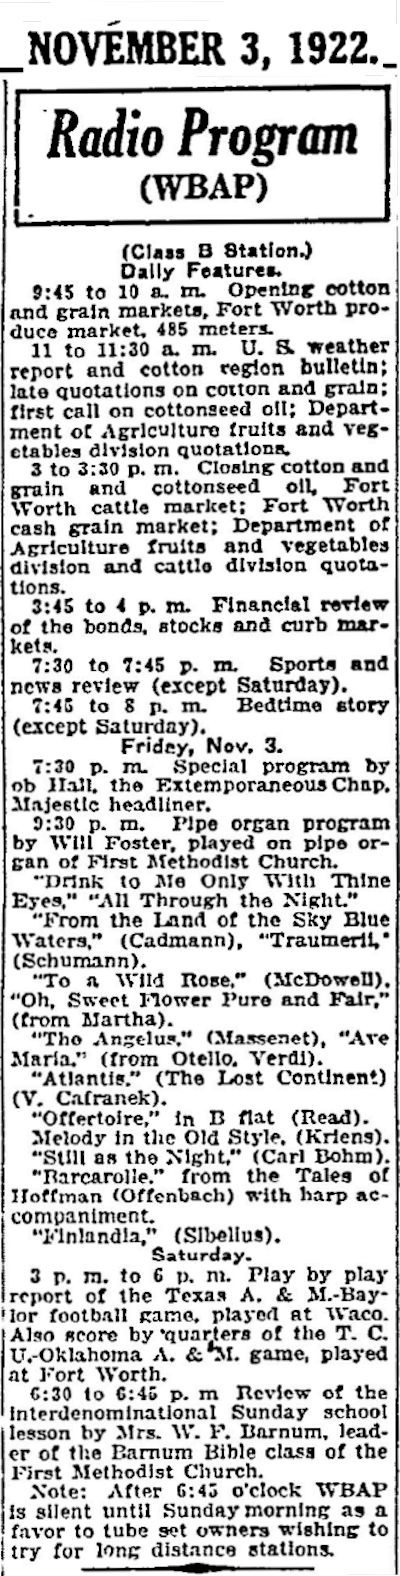 wbap schedule 1922